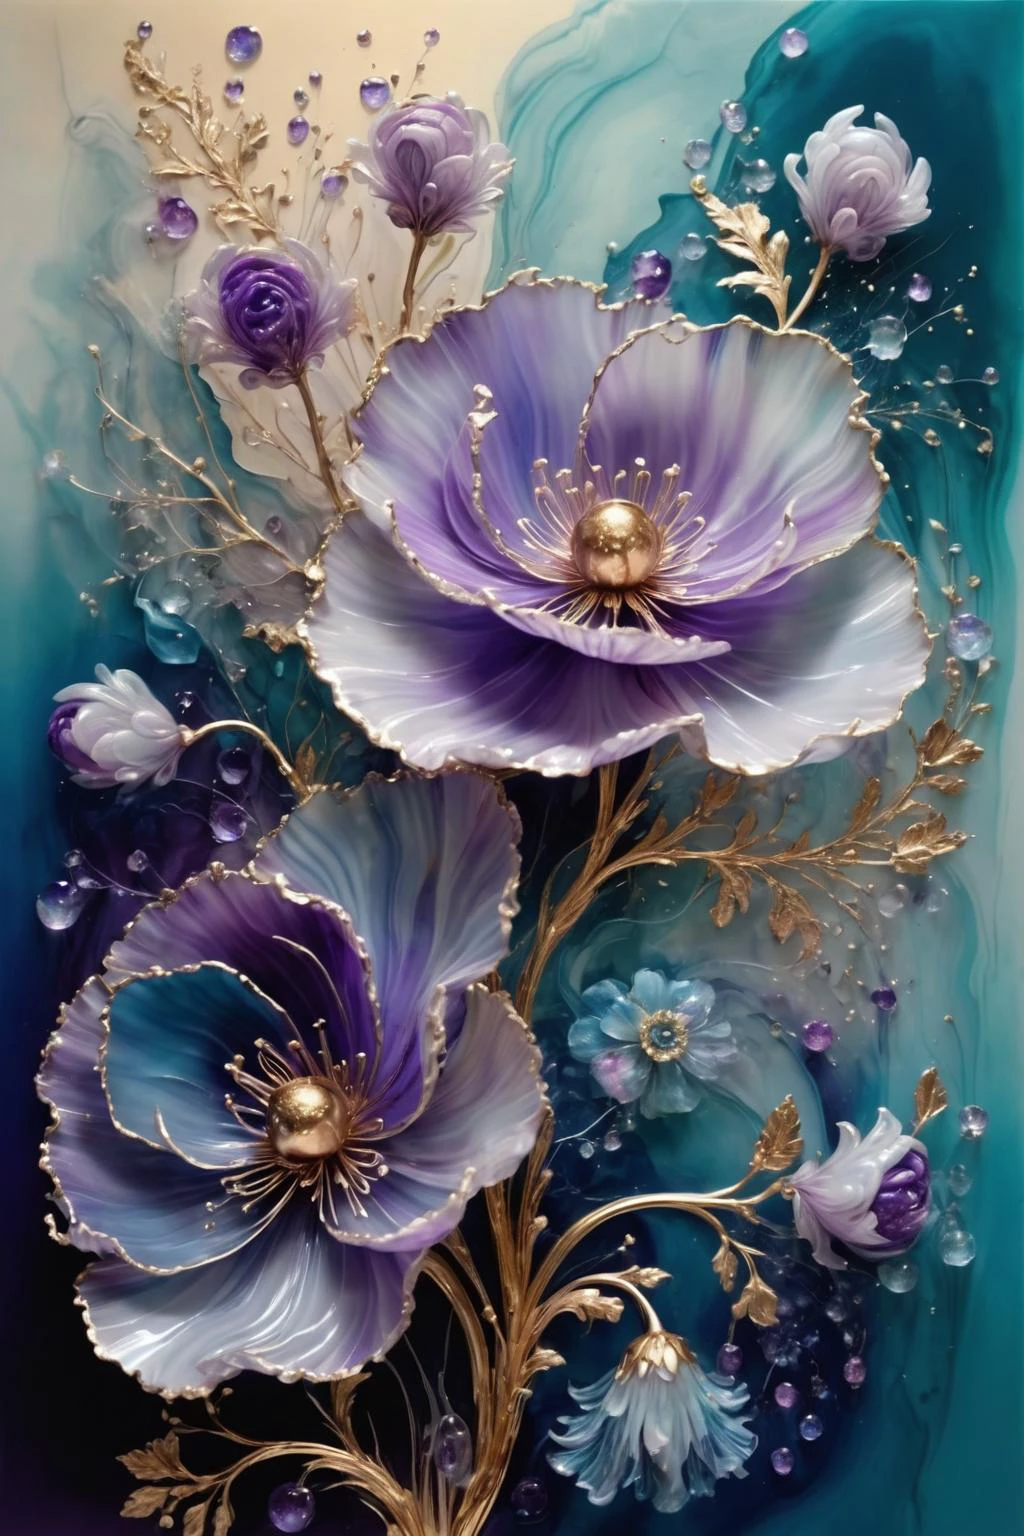 咲き誇る花束,花びらは青と紫のさまざまな色合いを示しています,中央は金色のテクスチャで装飾されています,スパークリング,エレガントでユニーク,ゆらゆらと揺れる,神秘的で魅力的,写実芸術と抽象芸術,詳細,とても現実的,美しく活気のある,夢のような、非現実的な,繊細な筆遣いと豊かな色彩,美と謎,想像を絶する美しさ,華やかで複雑な,透明,半透明,瑪瑙素材,翡翠素材,アン・バシュリエ,